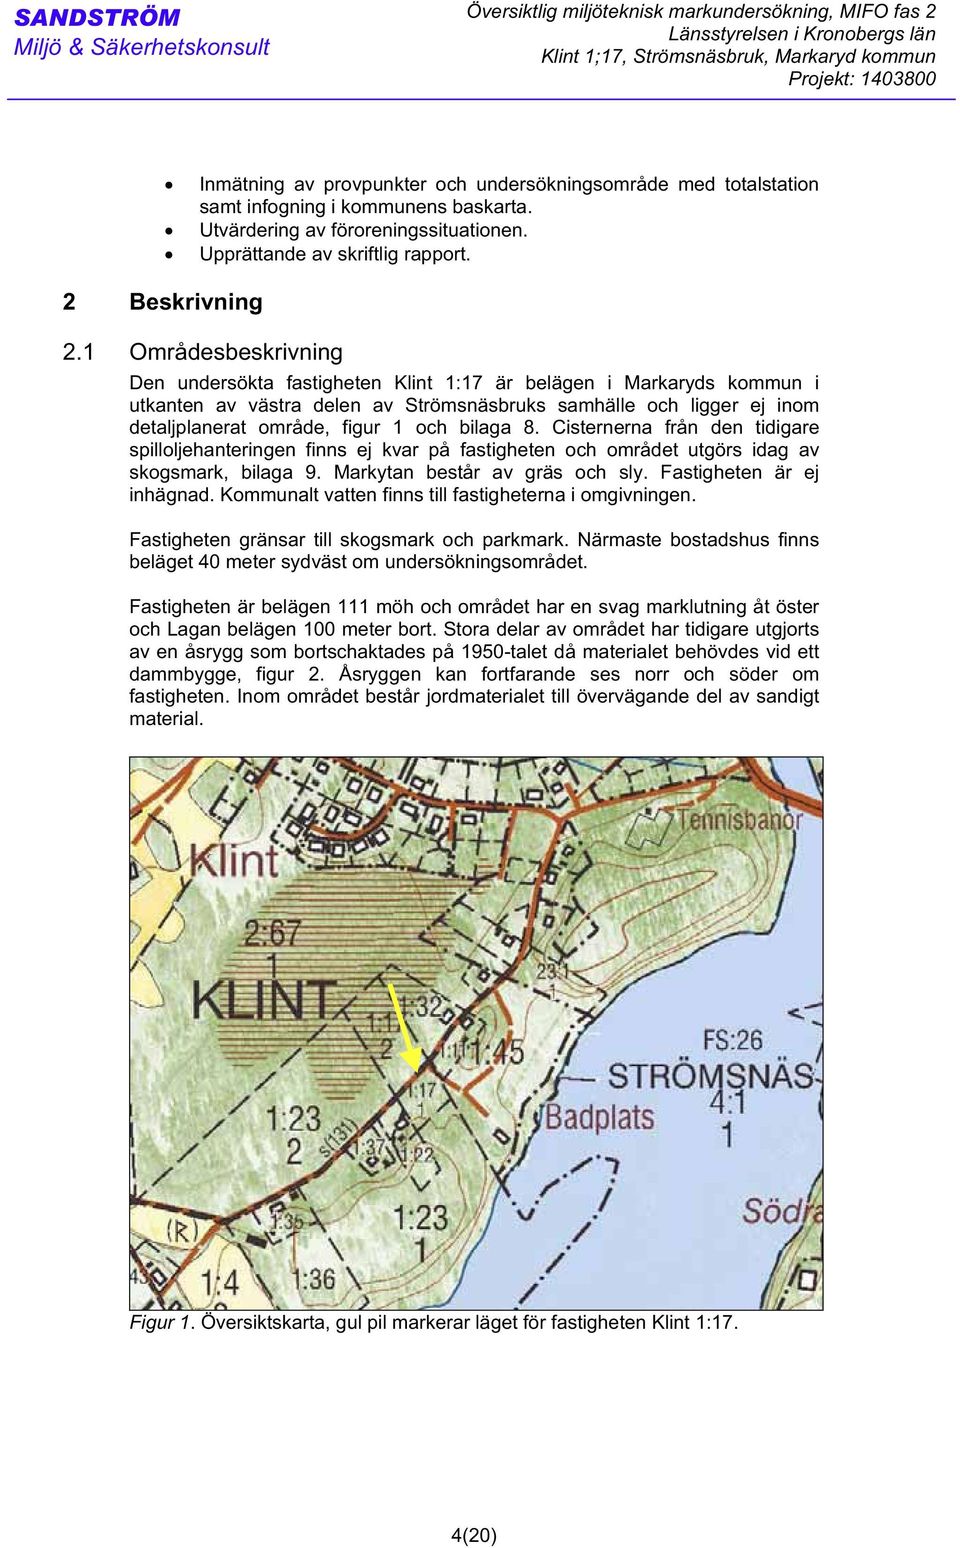 1 Områdesbeskrivning Den undersökta fastigheten Klint 1:17 är belägen i Markaryds kommun i utkanten av västra delen av Strömsnäsbruks samhälle och ligger ej inom detaljplanerat område, figur 1 och